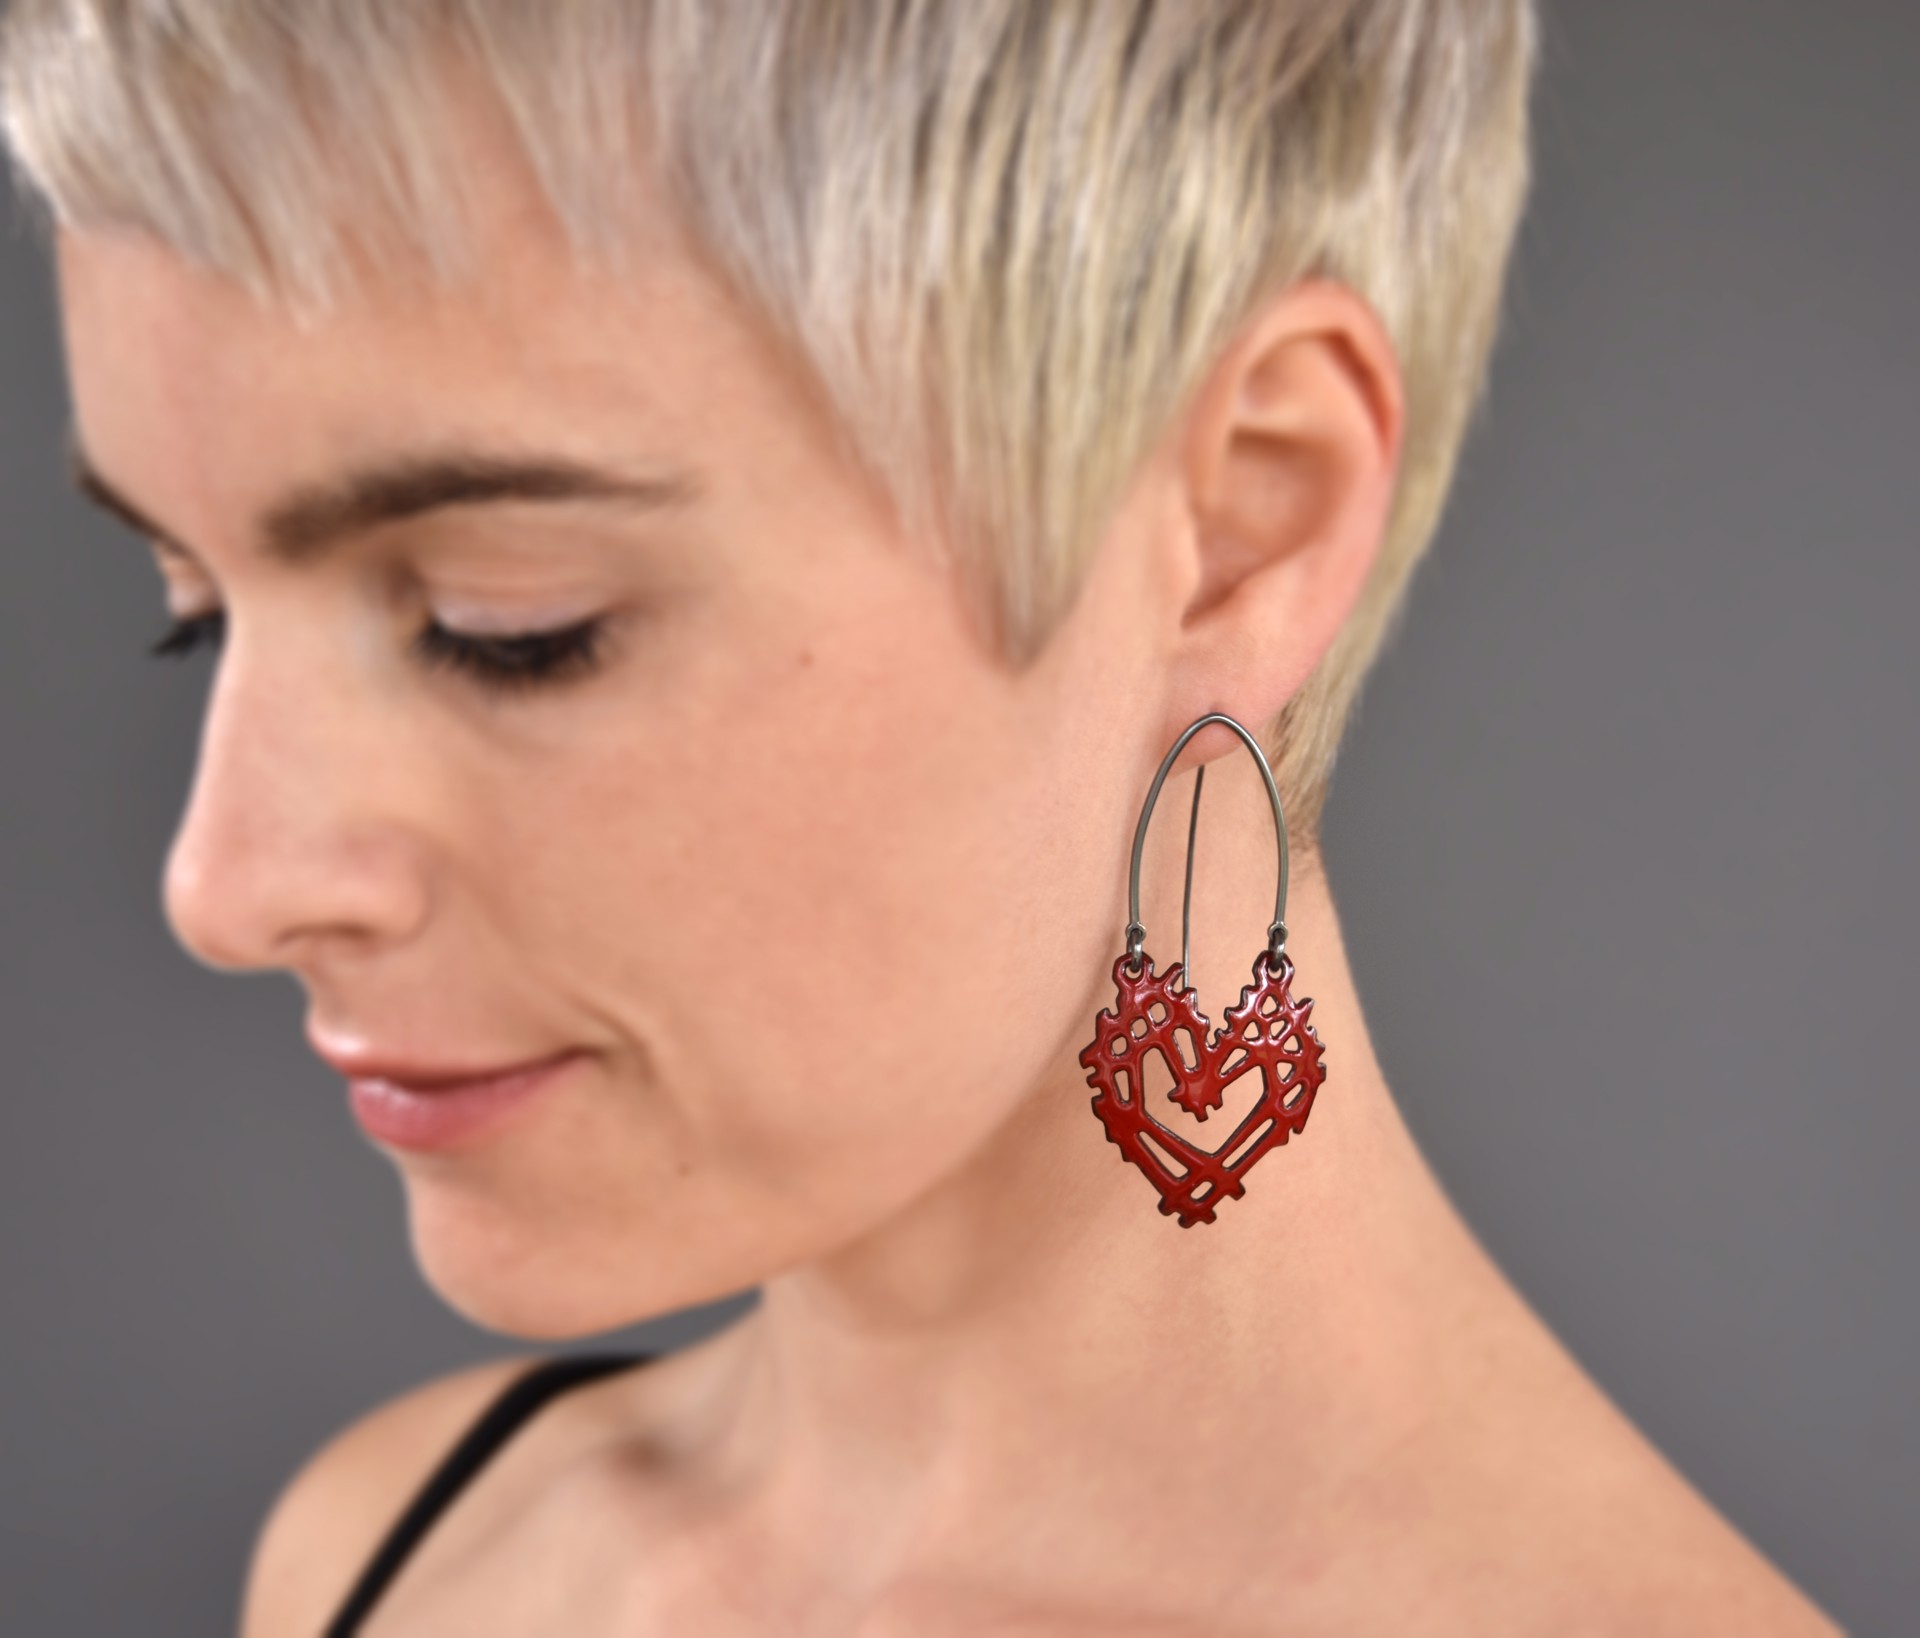 Stick & Stone Heart Earrings by Joanna Nealey